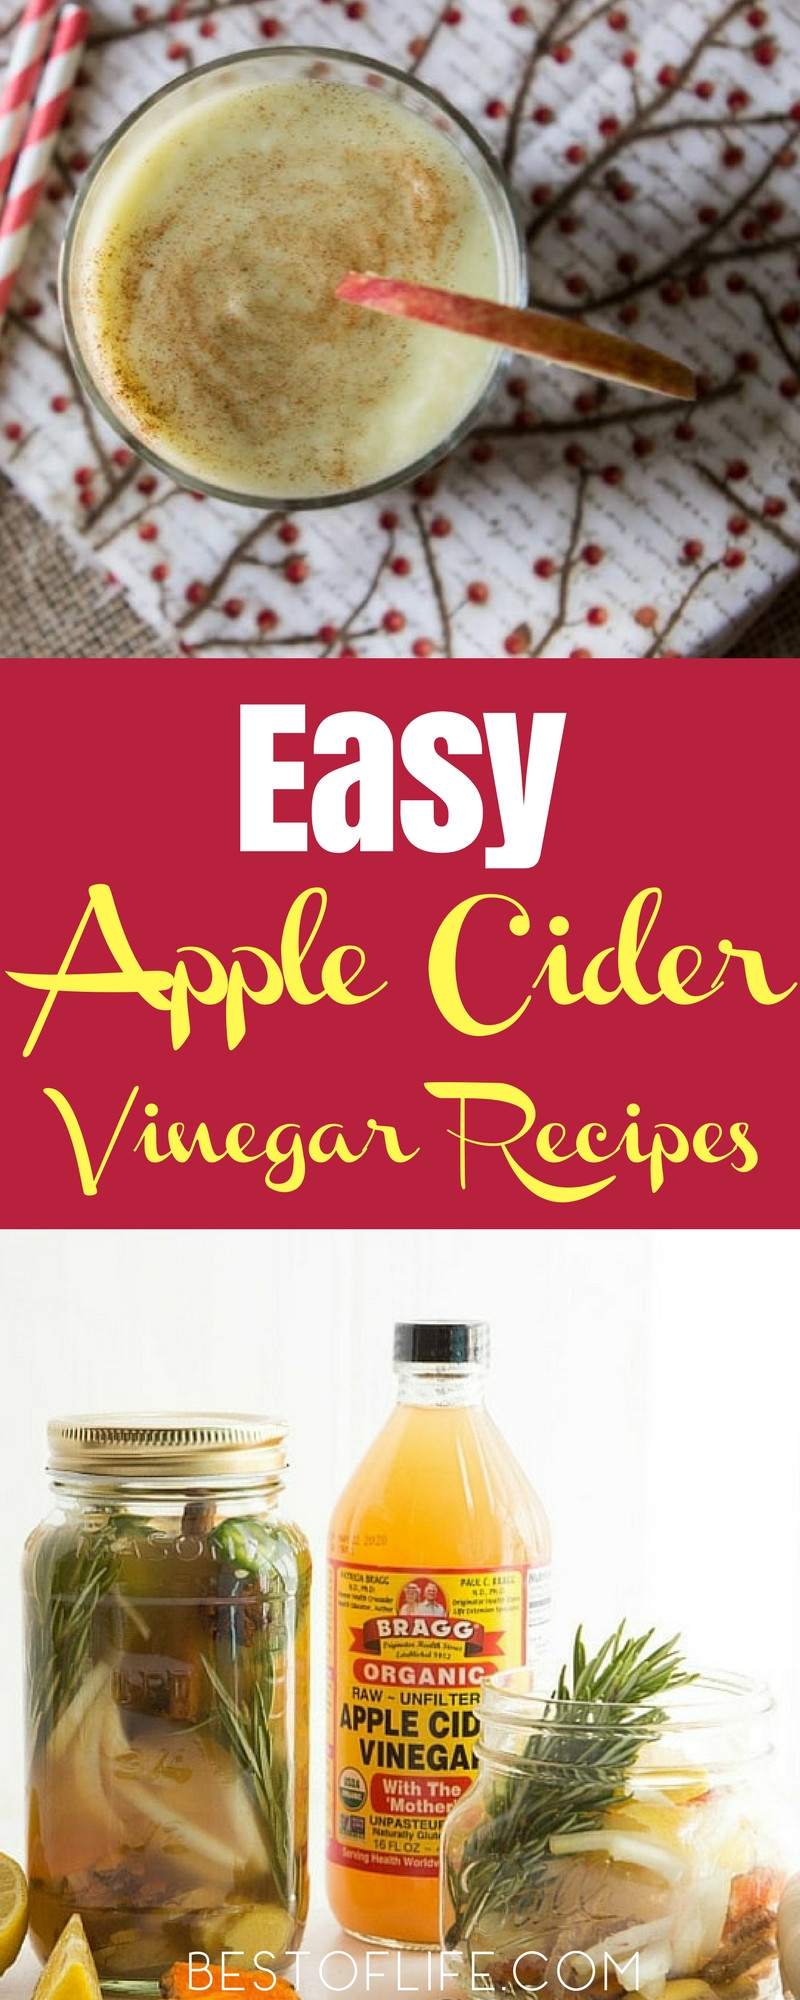 Apple Cider Vinegar Weight Loss Recipe
 21 Apple Cider Vinegar Drink Recipes for Weight Loss The